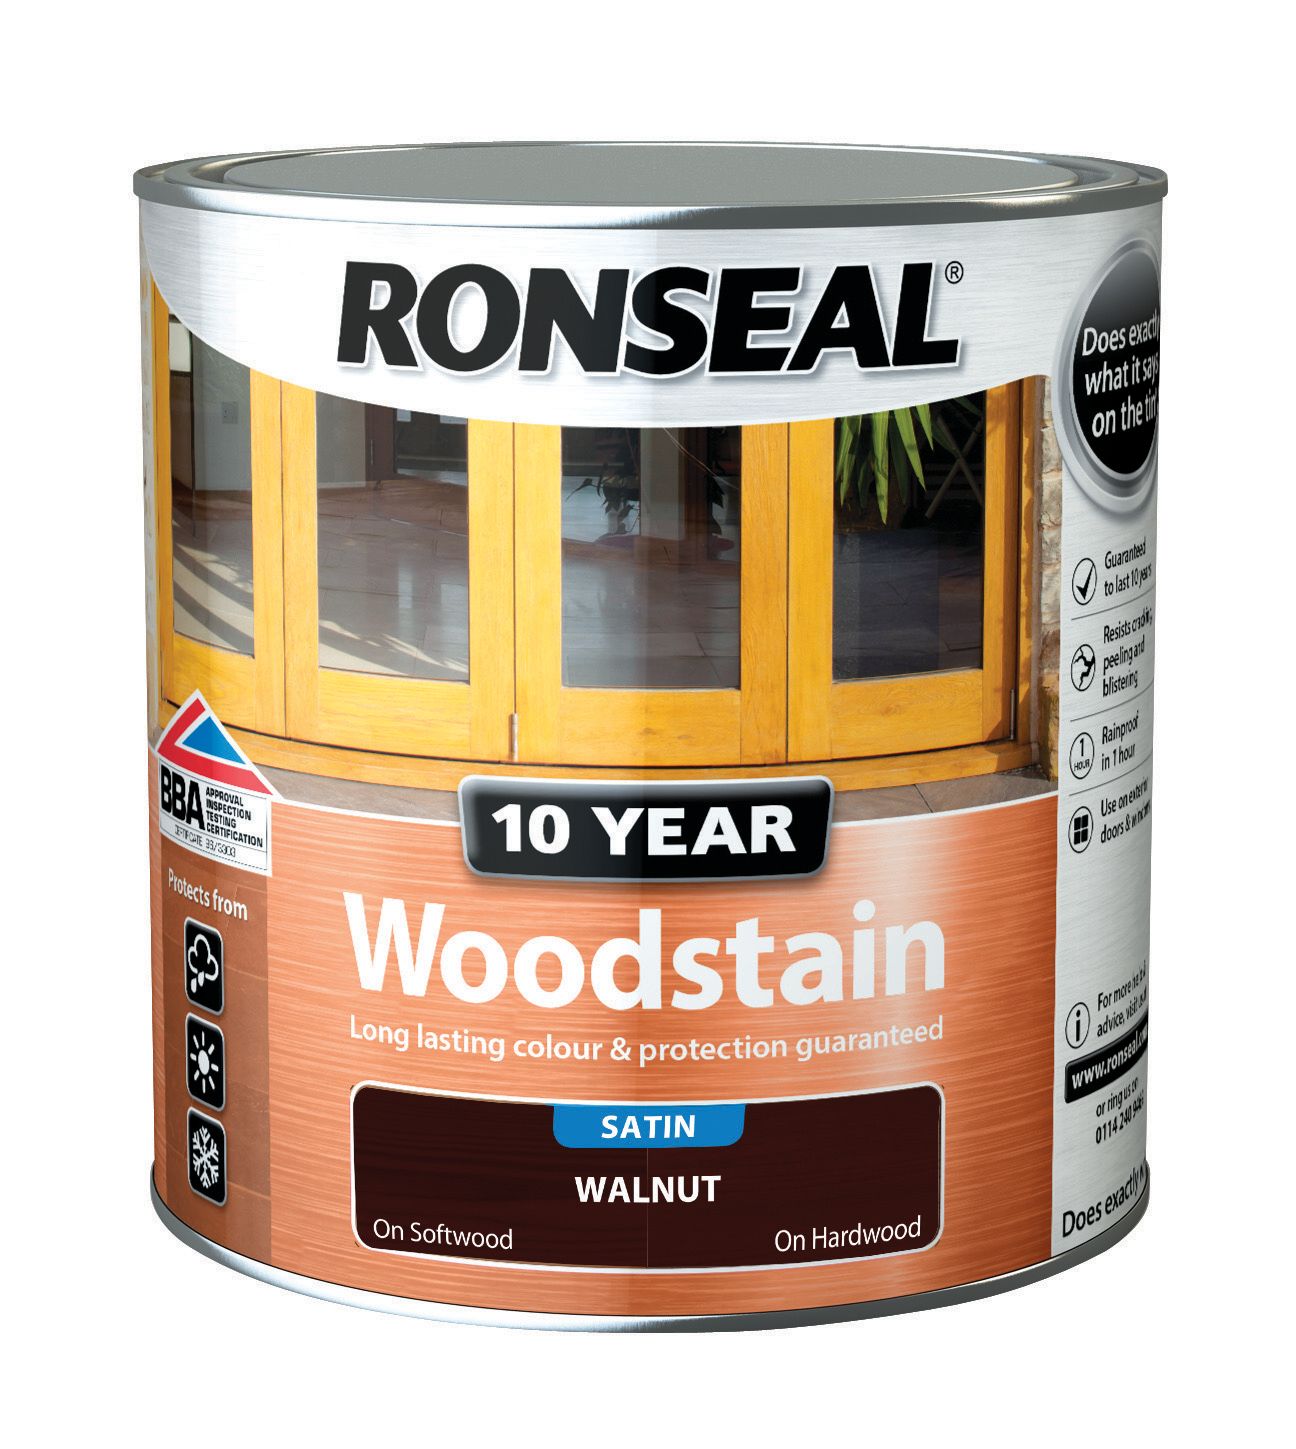 Ronseal 10 Year Woodstain - Walnut 2.5L